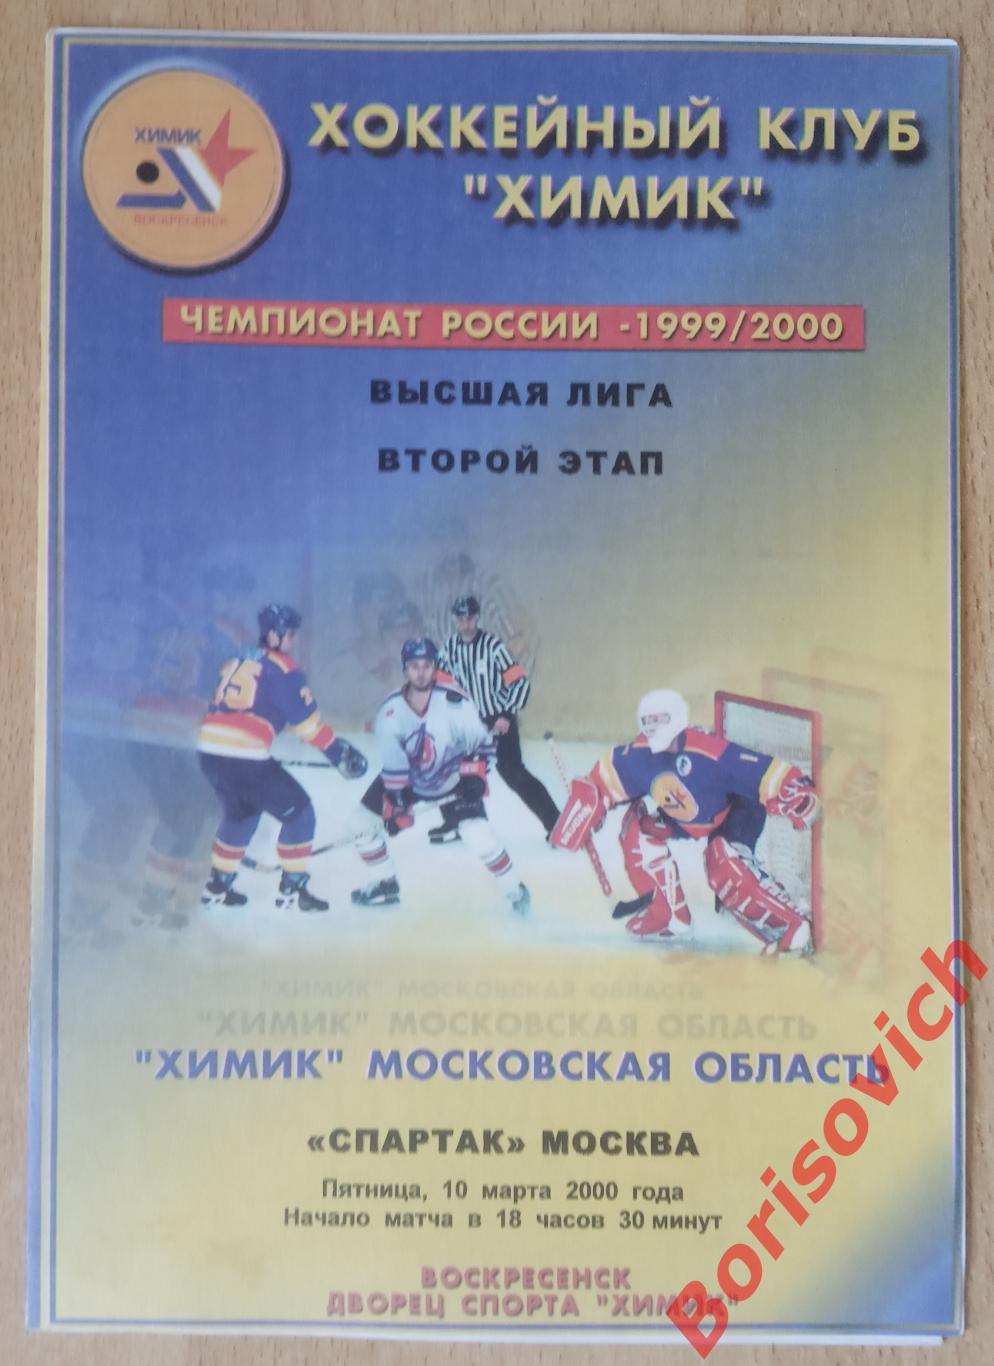 Химик Воскресенск - Спартак Москва 10-03-2000